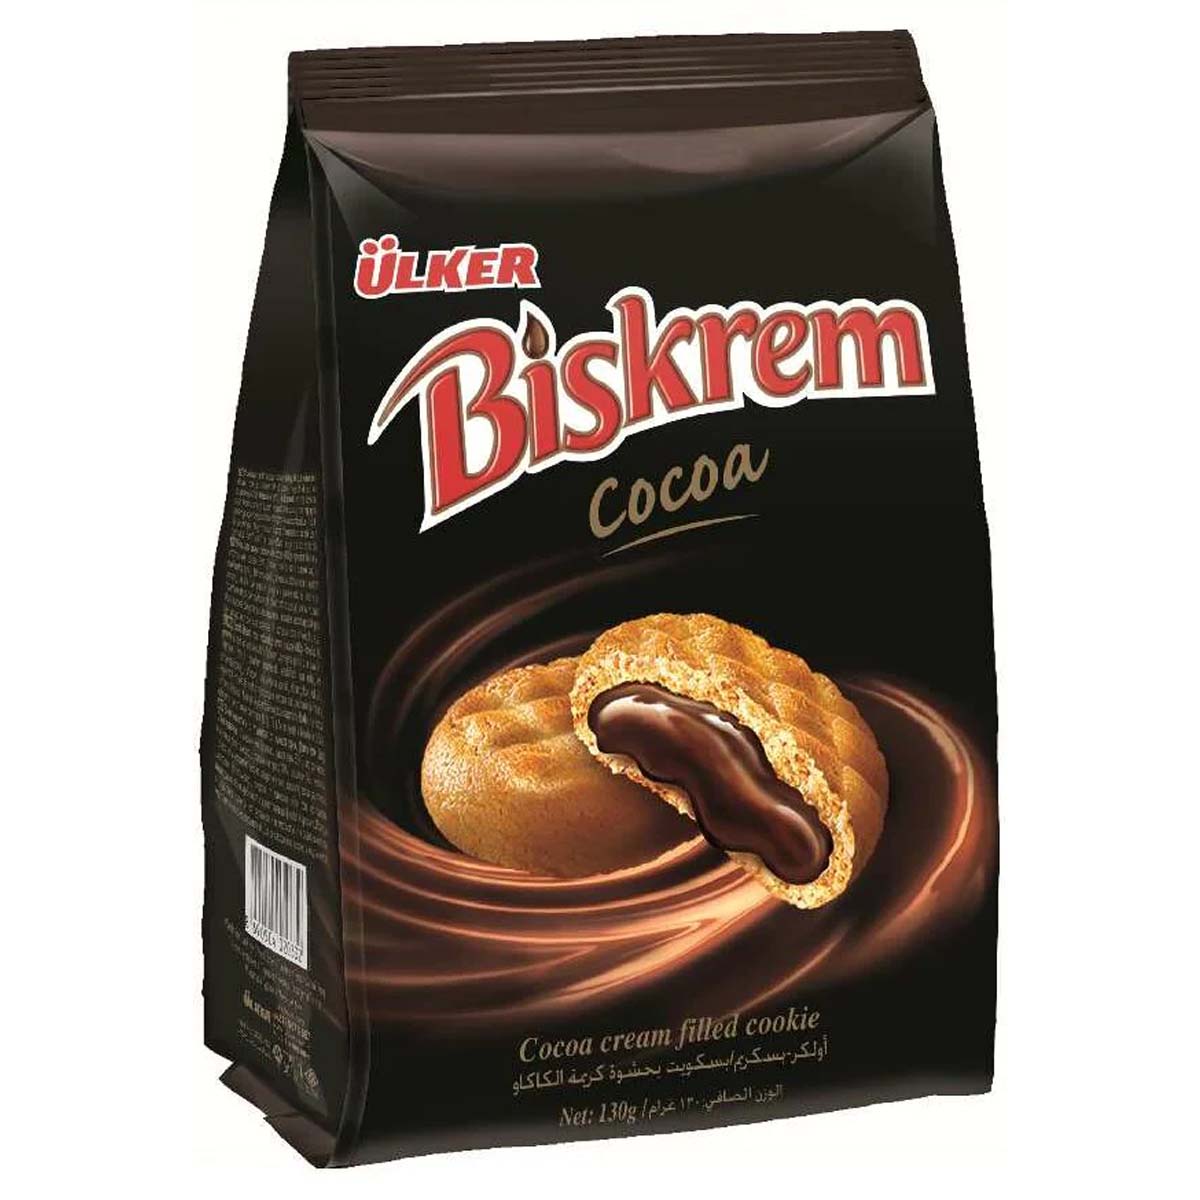 Ulker - Biskrem Cocoa-Cream Filled Biscuits - 200g - Continental Food Store